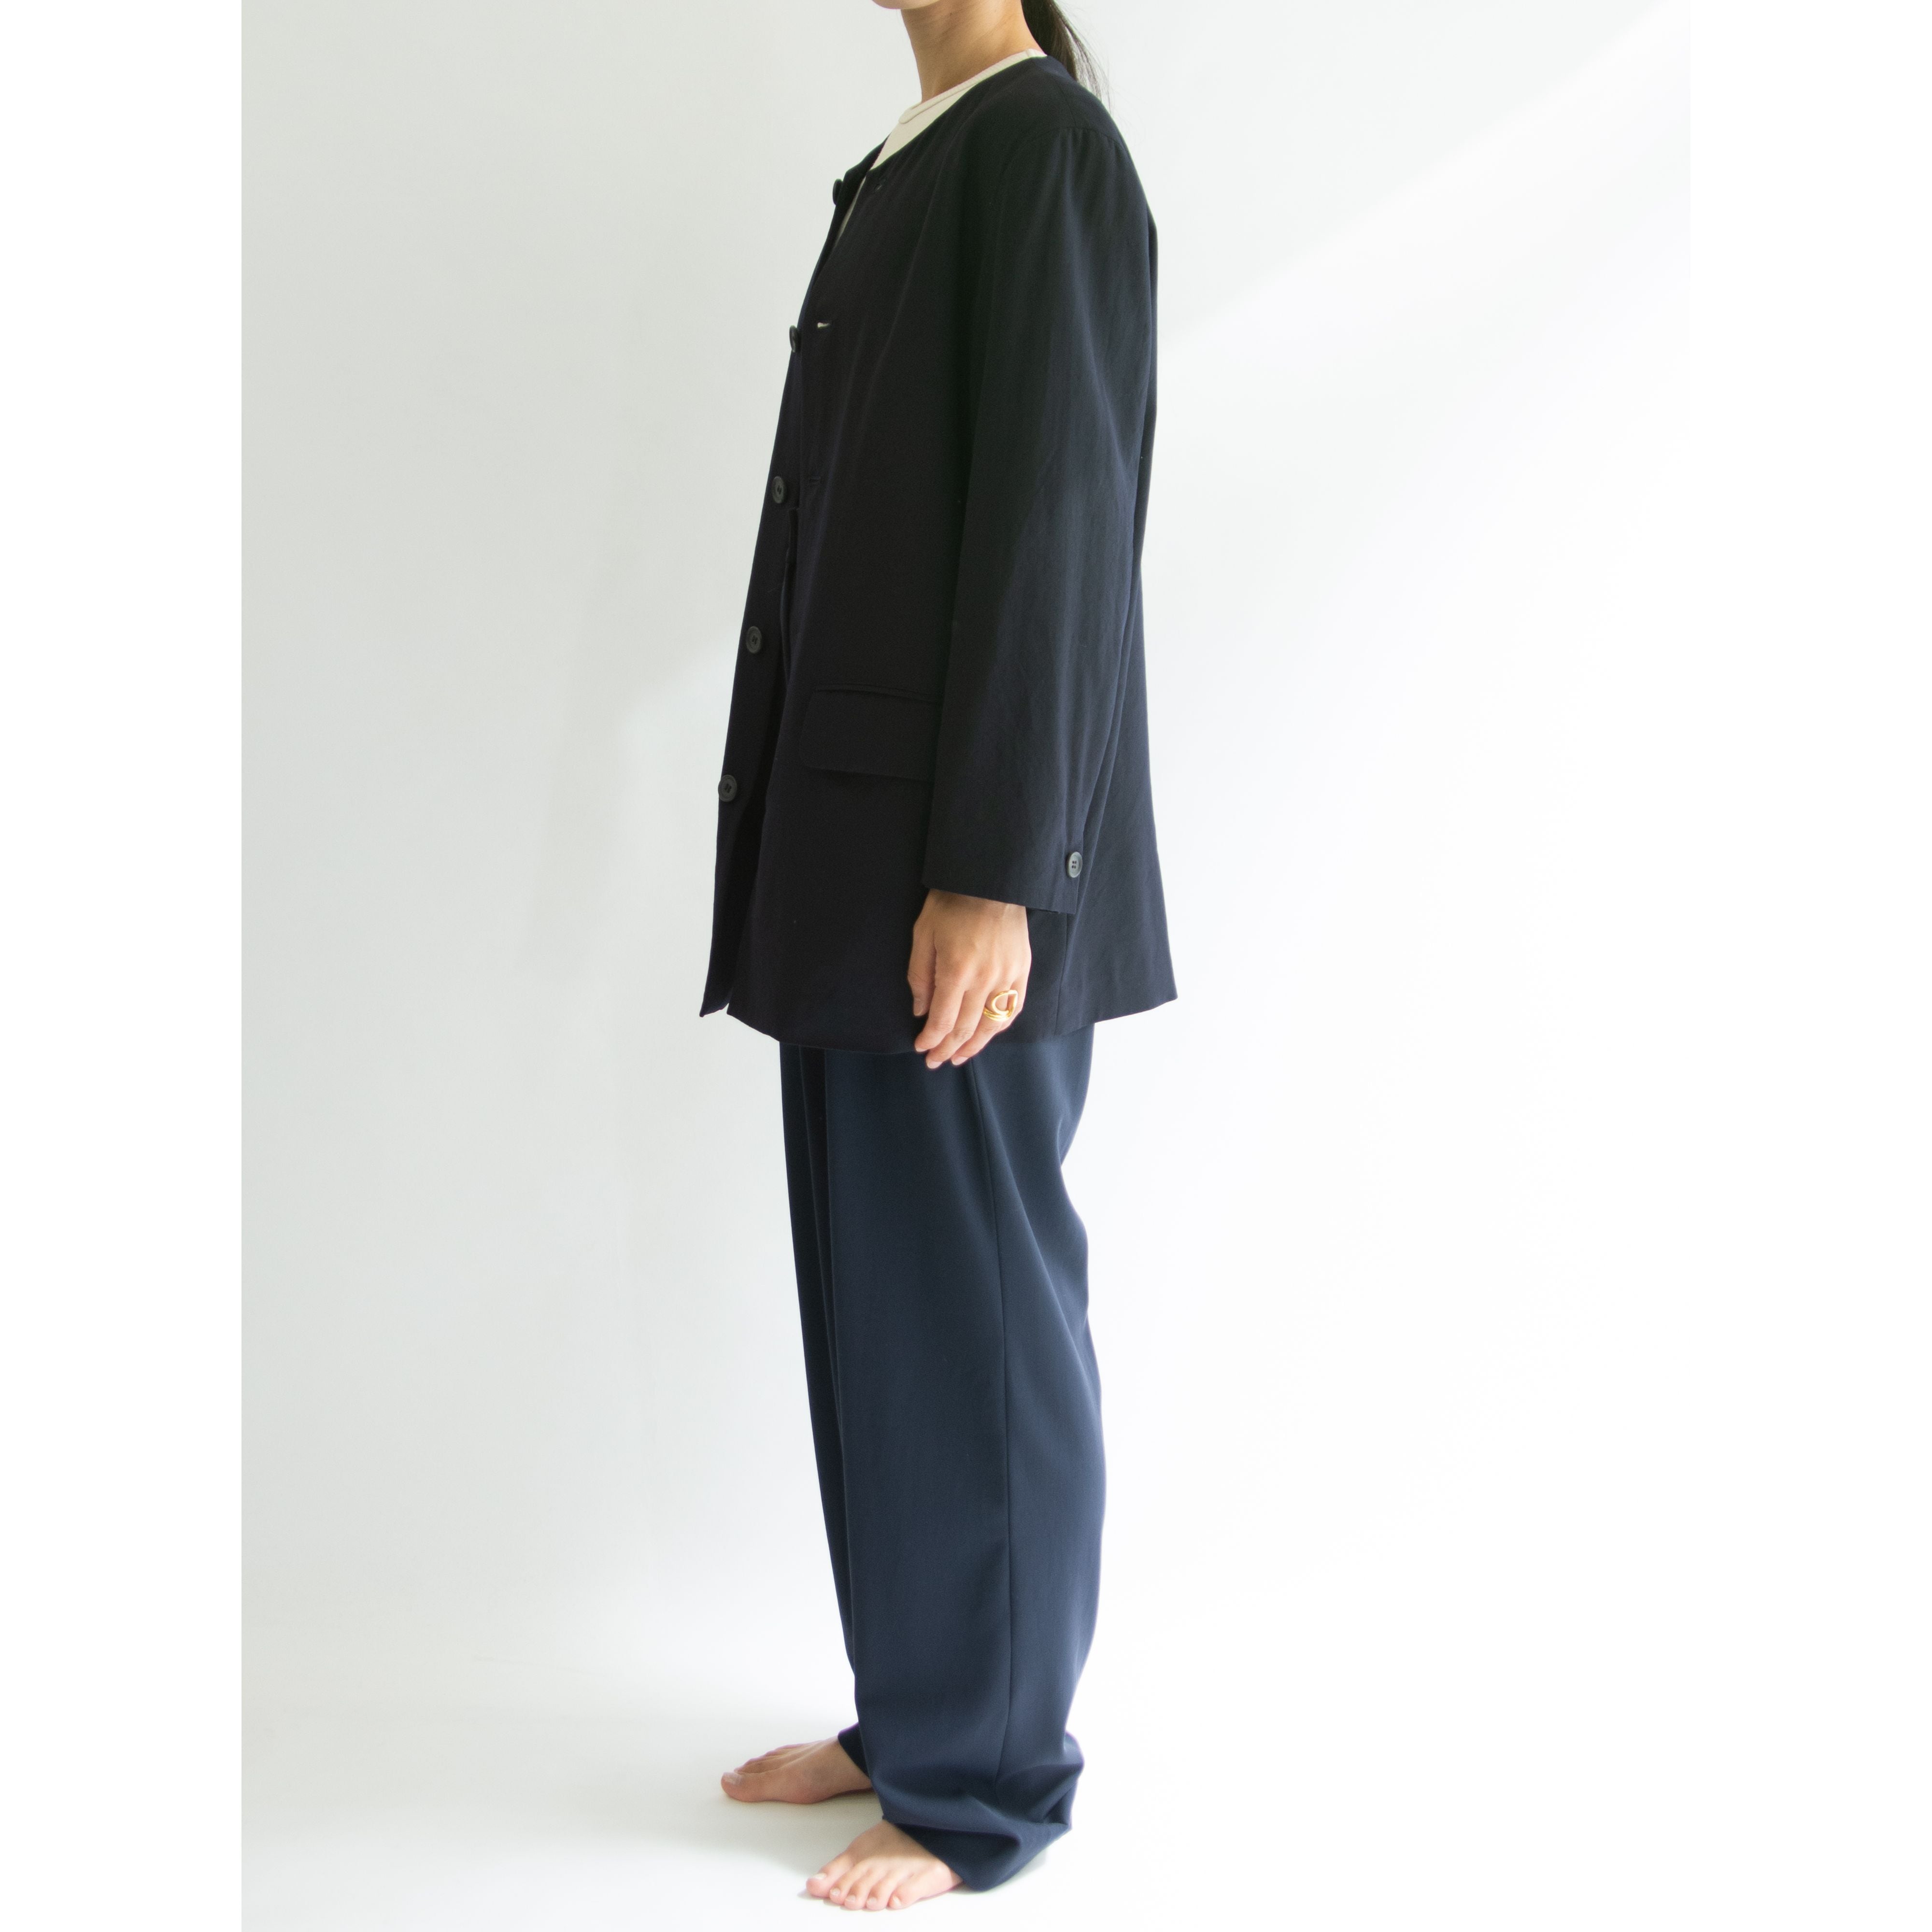 WORK SHOP Yohji Yamamoto】Made in Japan 100% Wool Collarless 